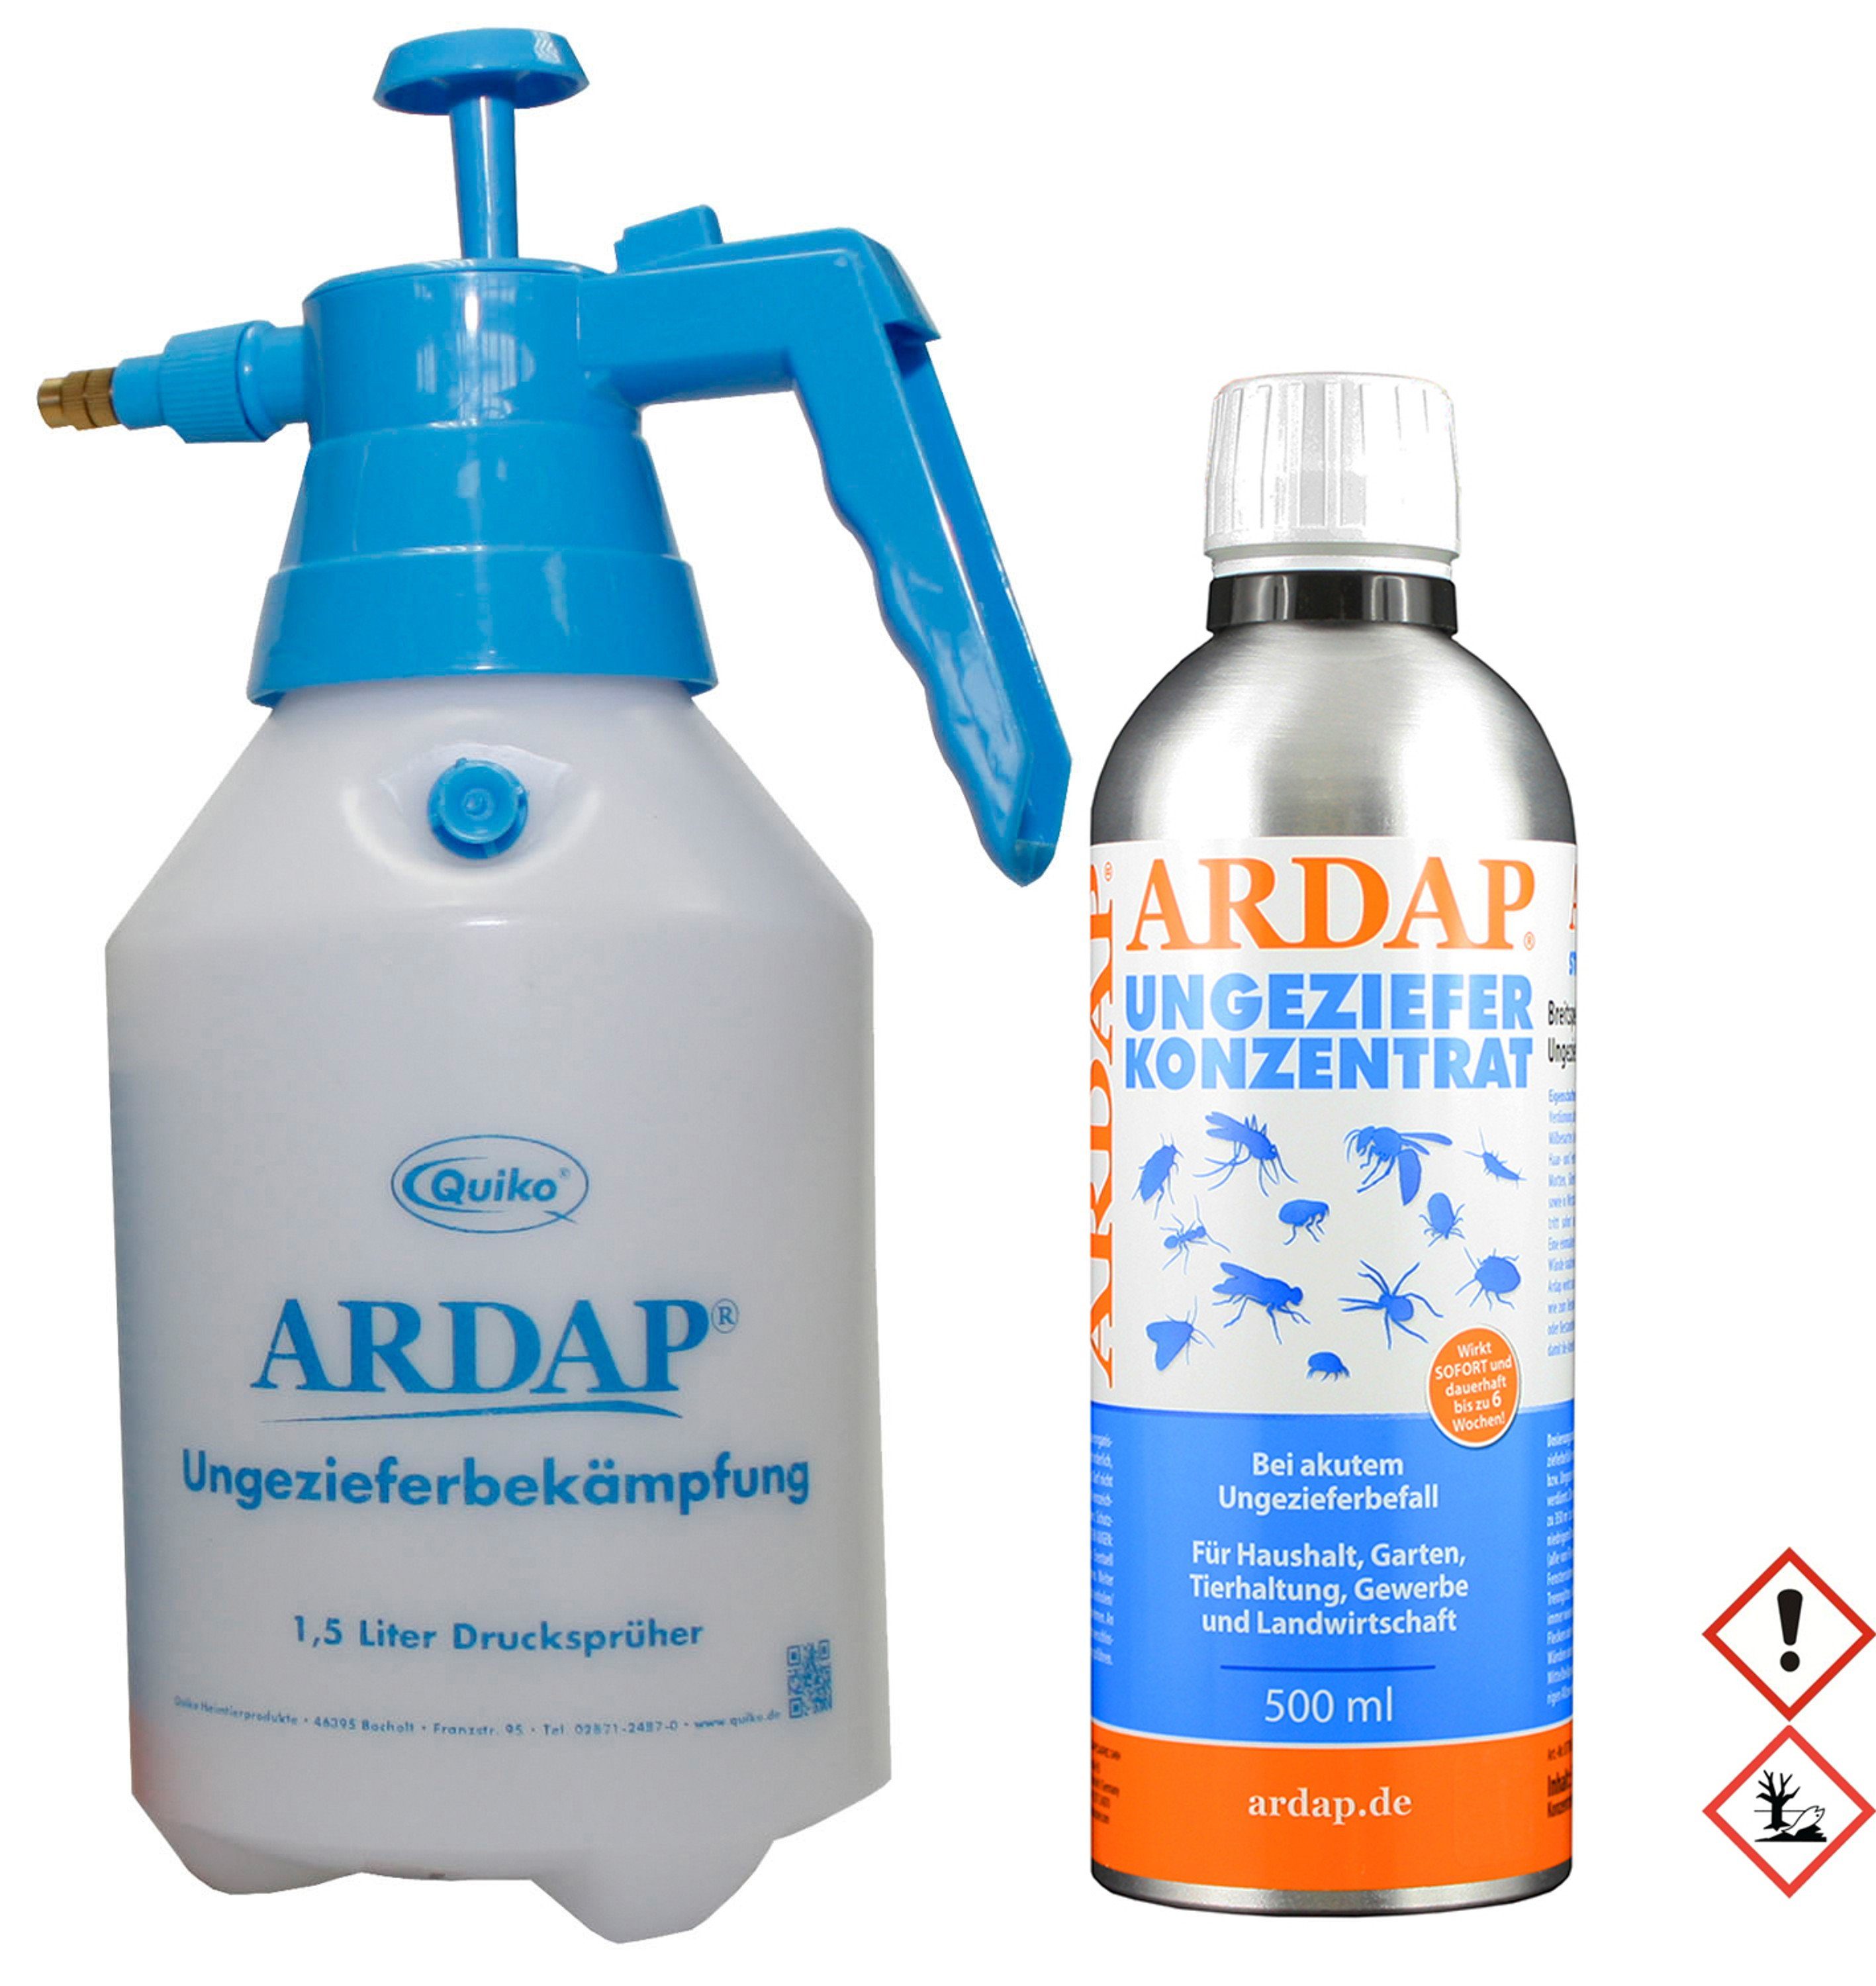 Ardap Insektenspray Ardap Konzentrat 500ml Ardap 1,5L Drucksprüher incl. für das Konzentrat